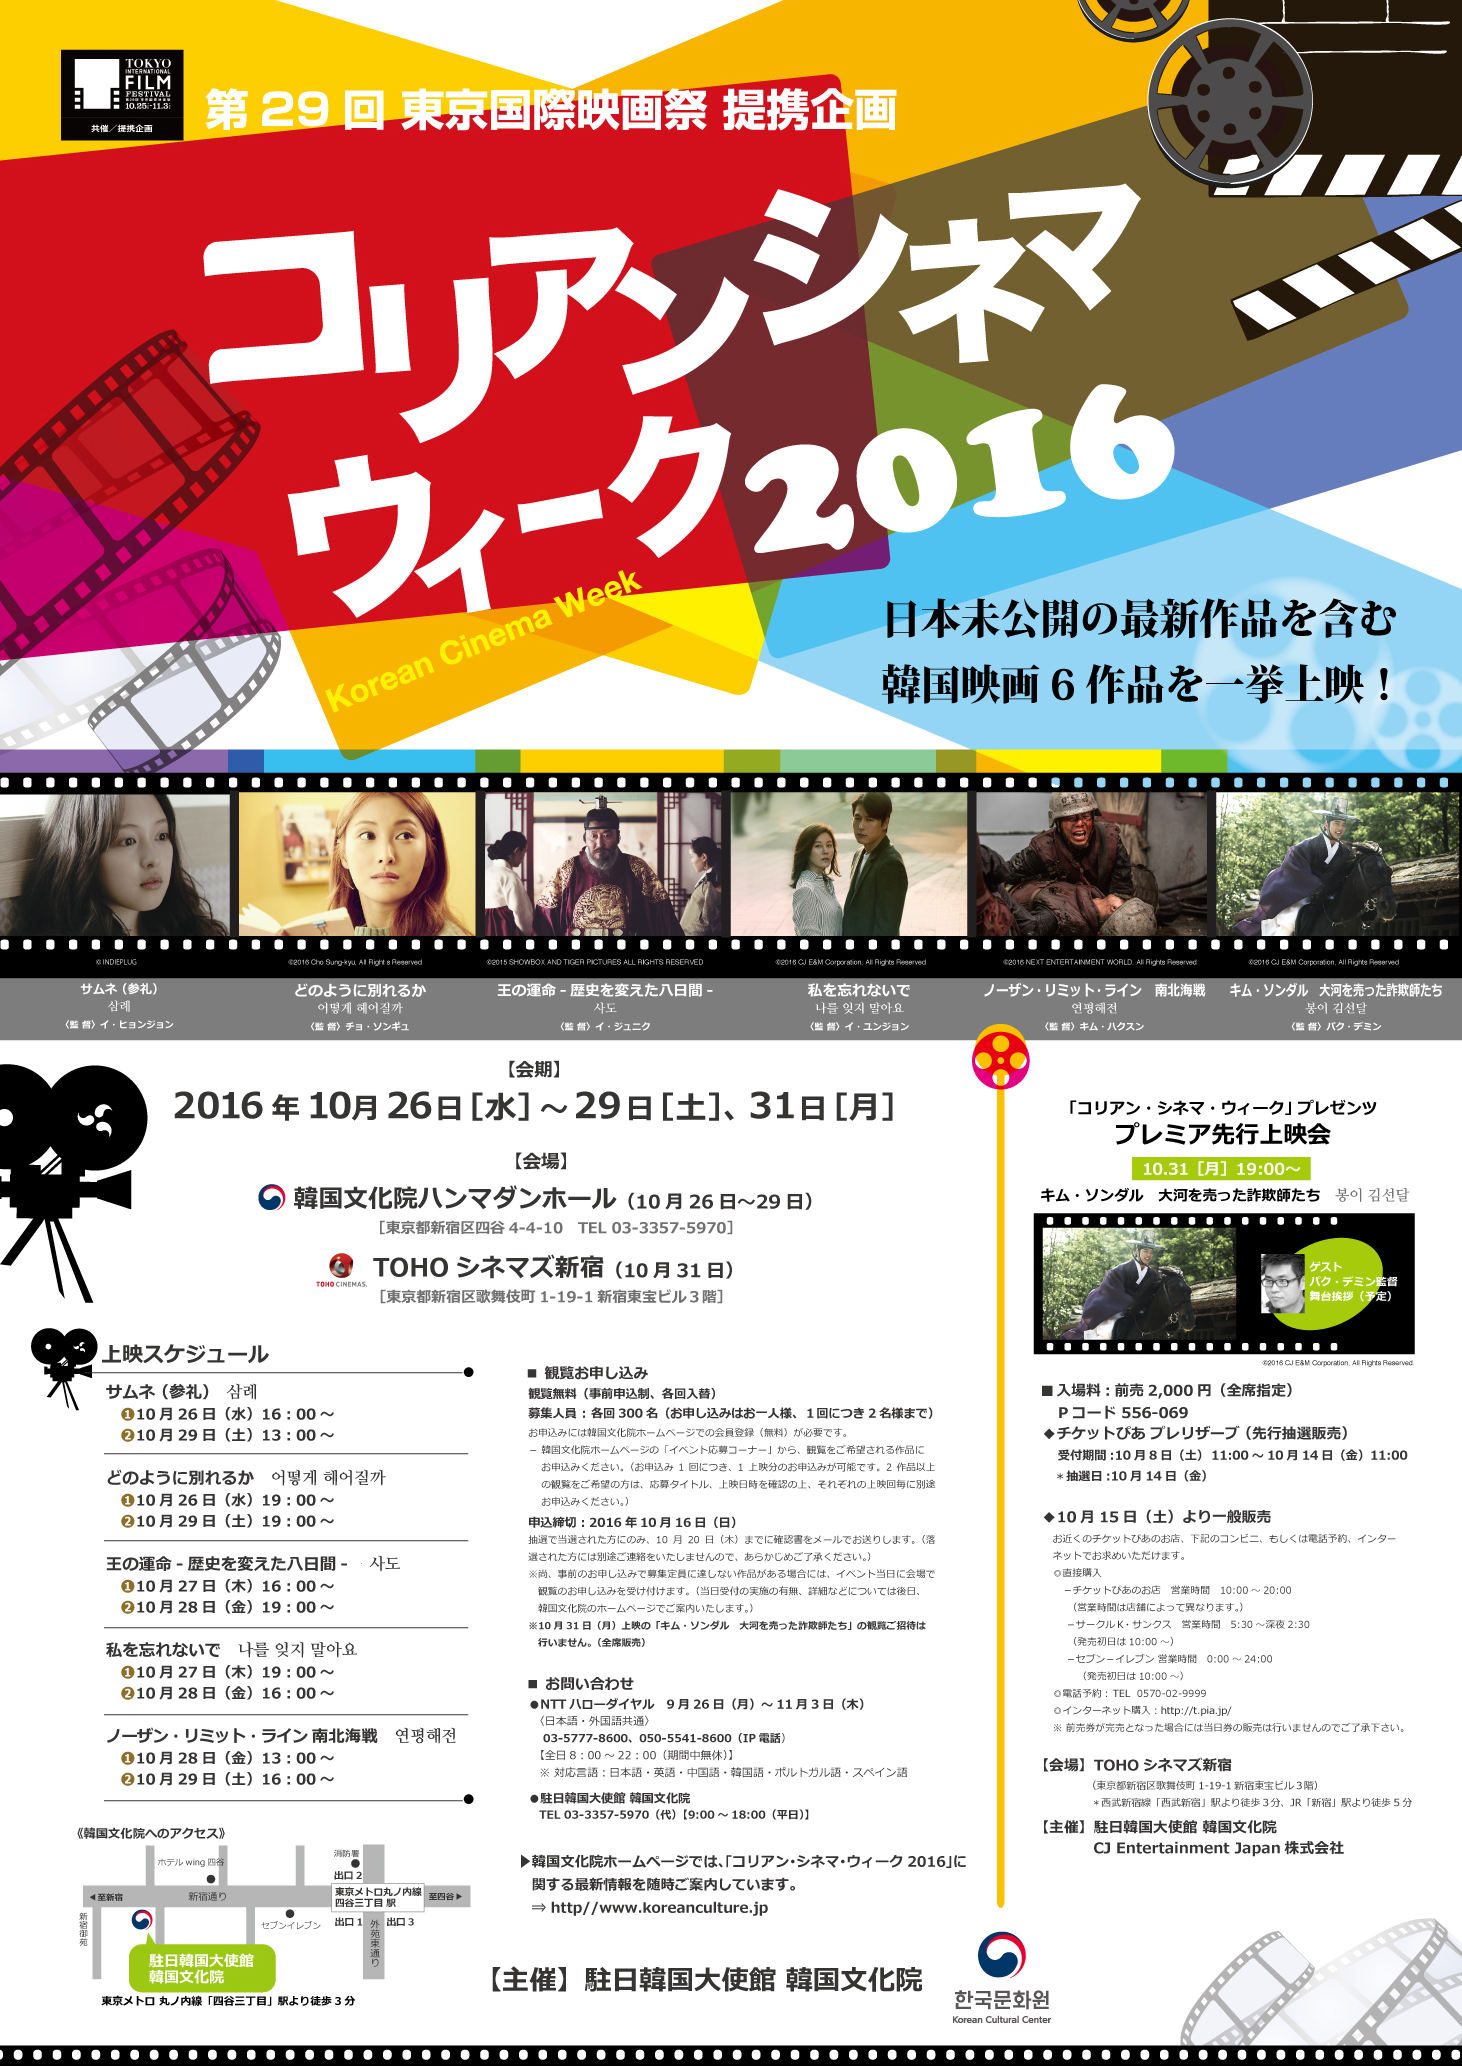 第29回 東京国際映画祭 提携企画 コリアン シネマ ウィーク 16 イベントカレンダー 新大久保ホットガイド